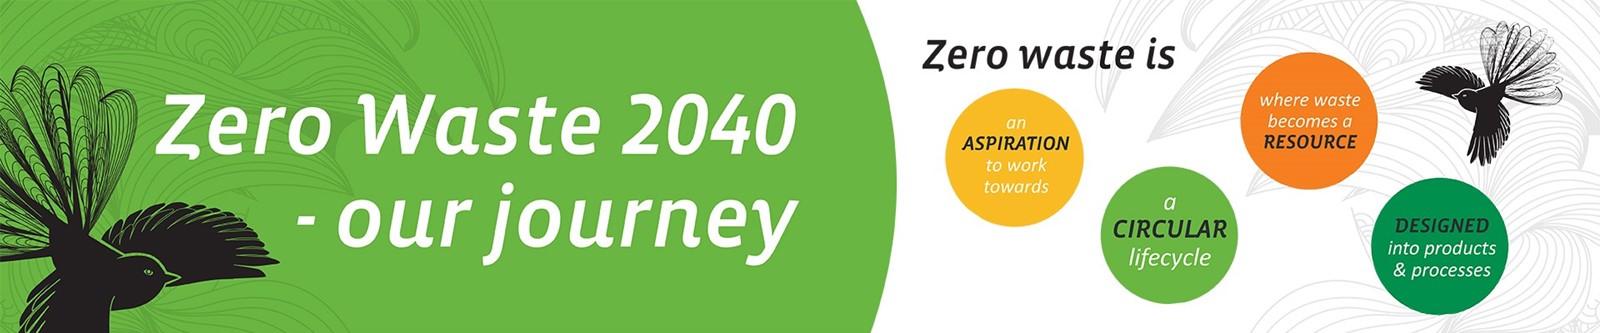 Zero Waste 2040